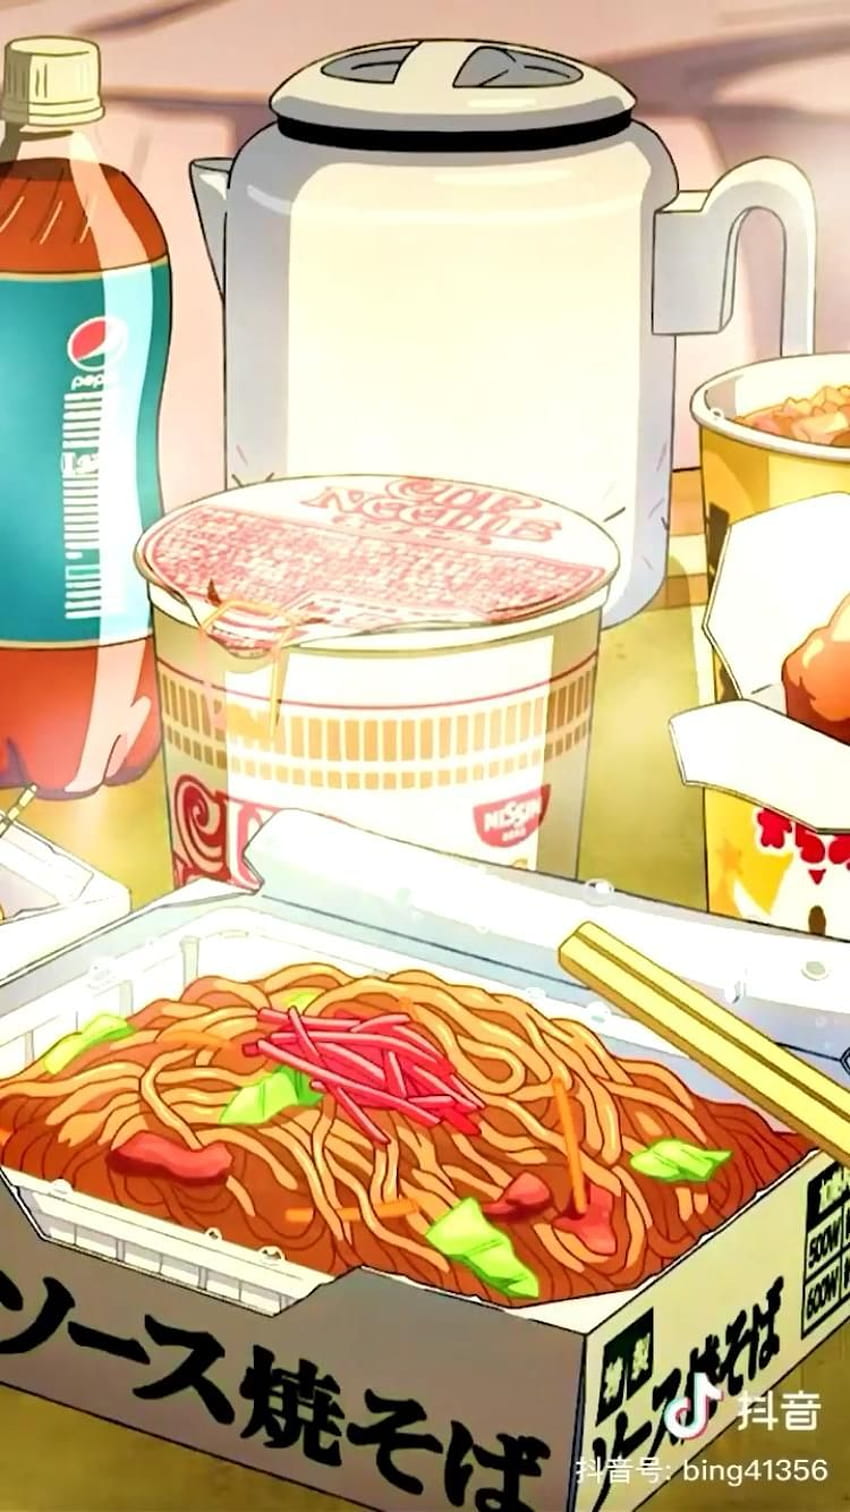 Anime Food Aesthetic on Twitter Looks yummy   httpstcoYaCGyVb8Ci  Twitter